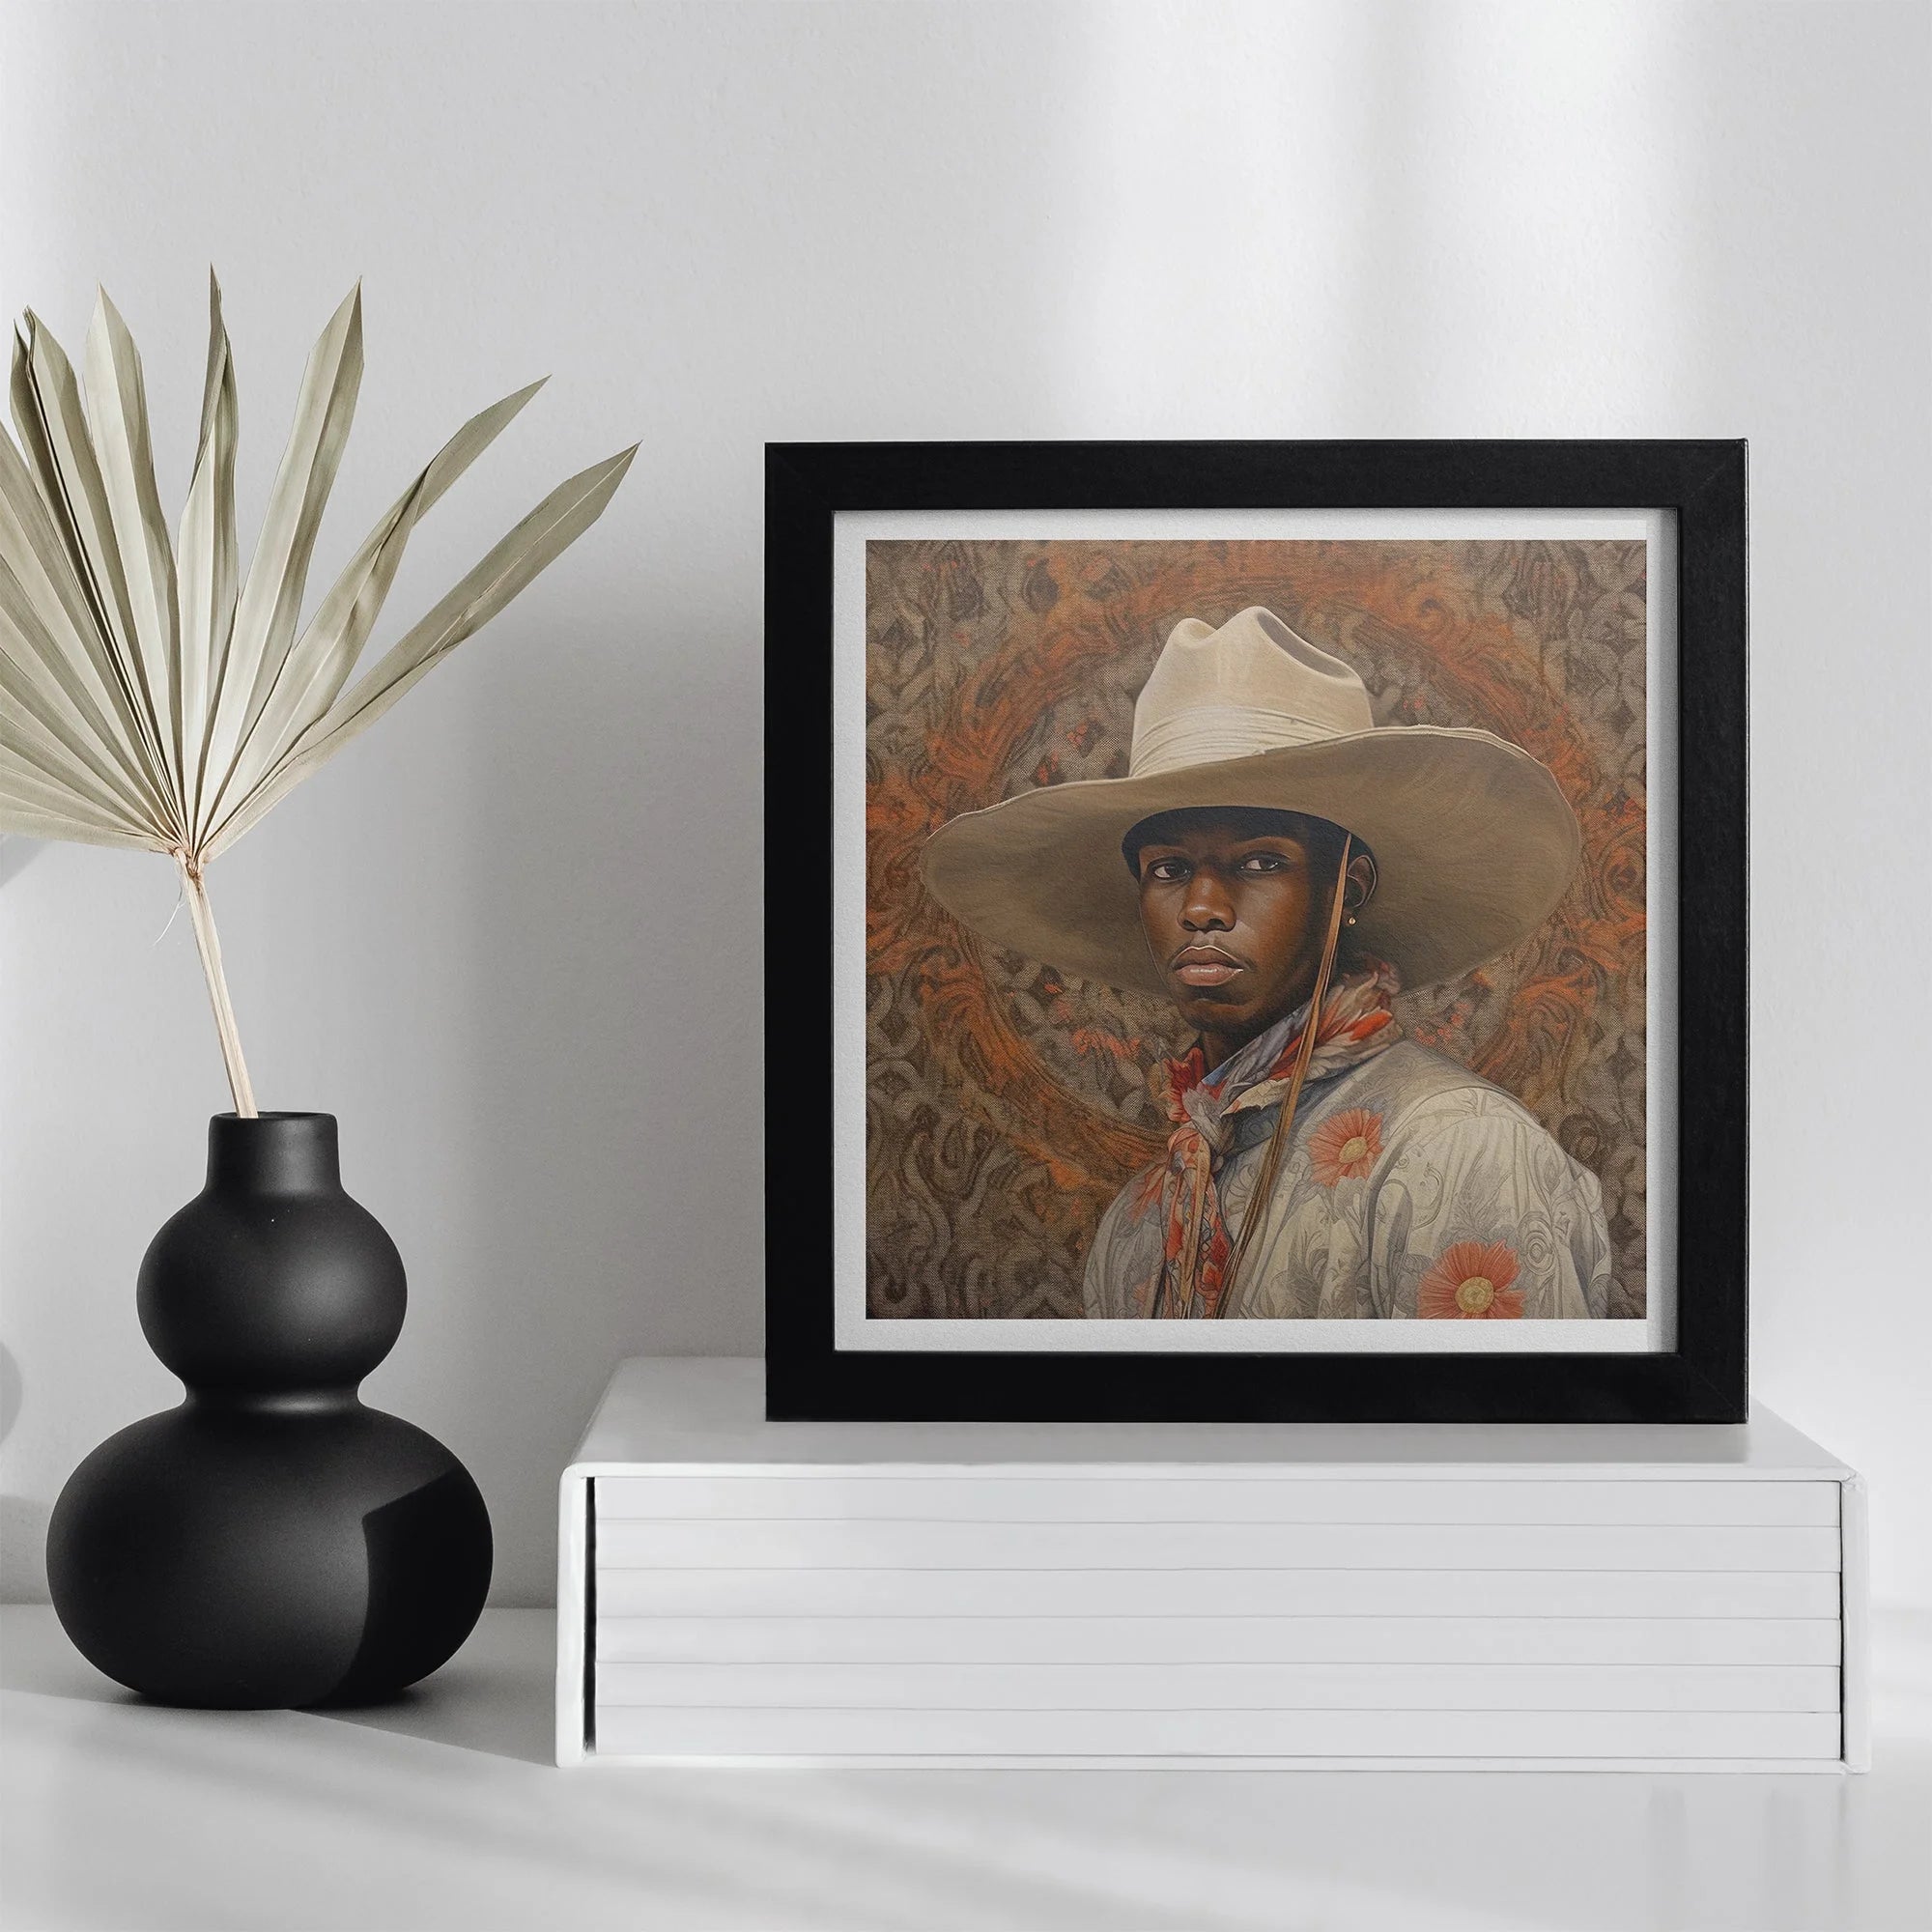 Titus - Gay Black Cowboy Dandy Aesthetic Art Print - 16’x16’ - Posters Prints & Visual Artwork - Aesthetic Art